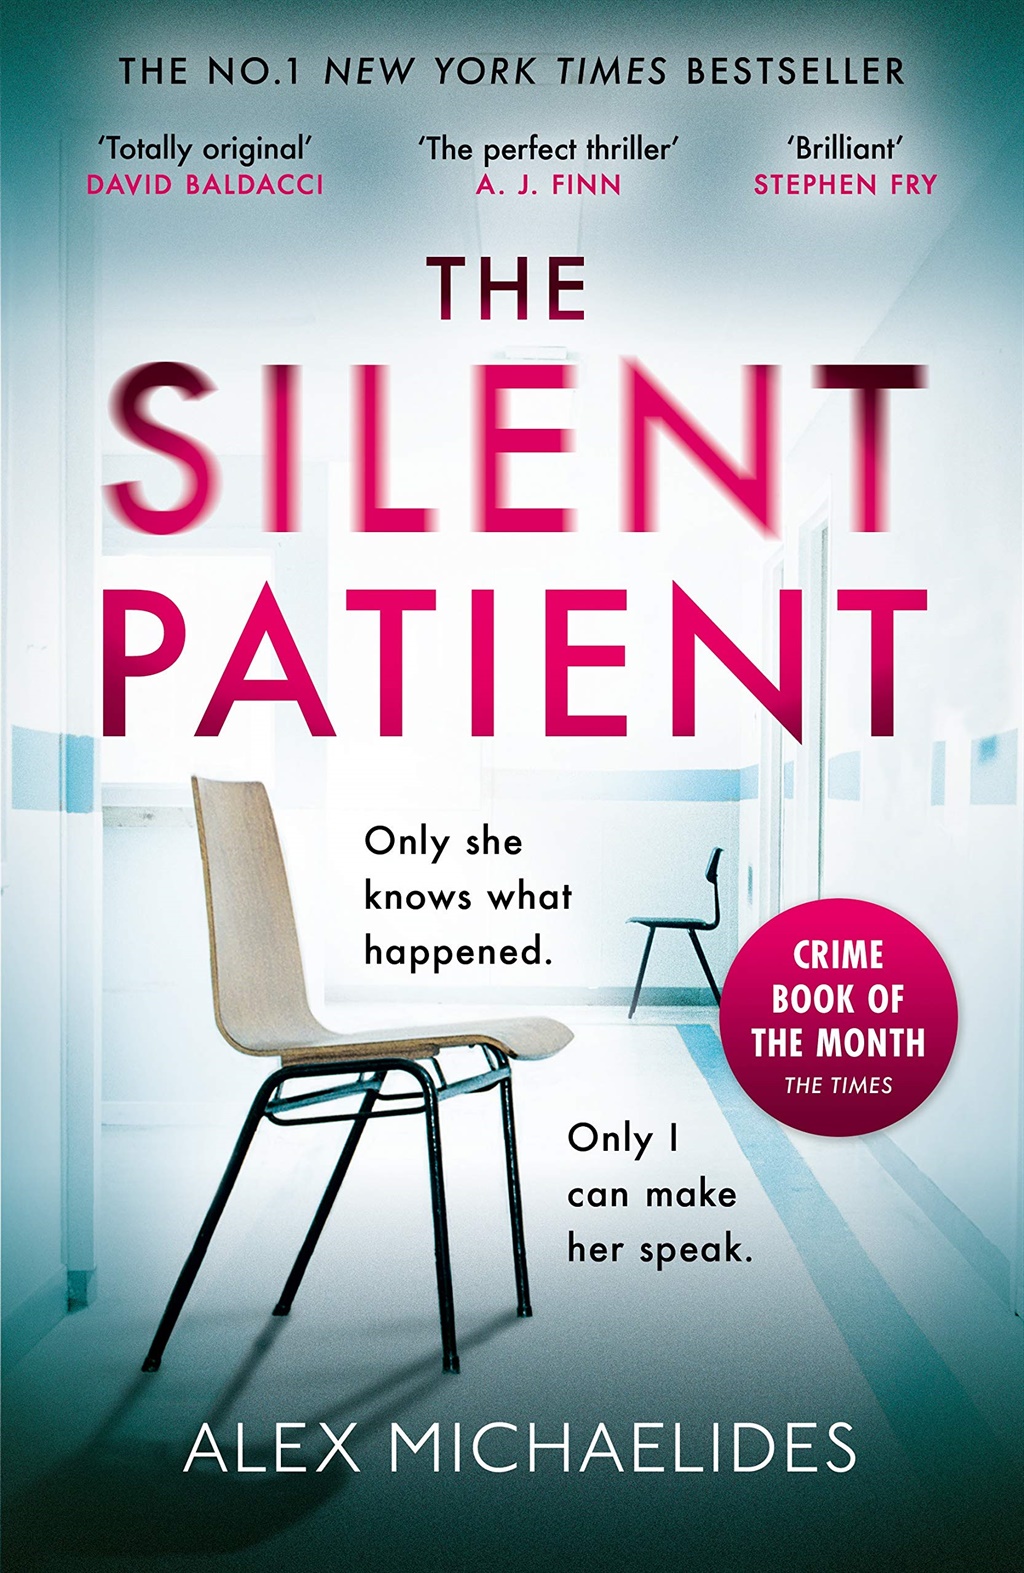 The Silent Patient by Alex Michaelides.